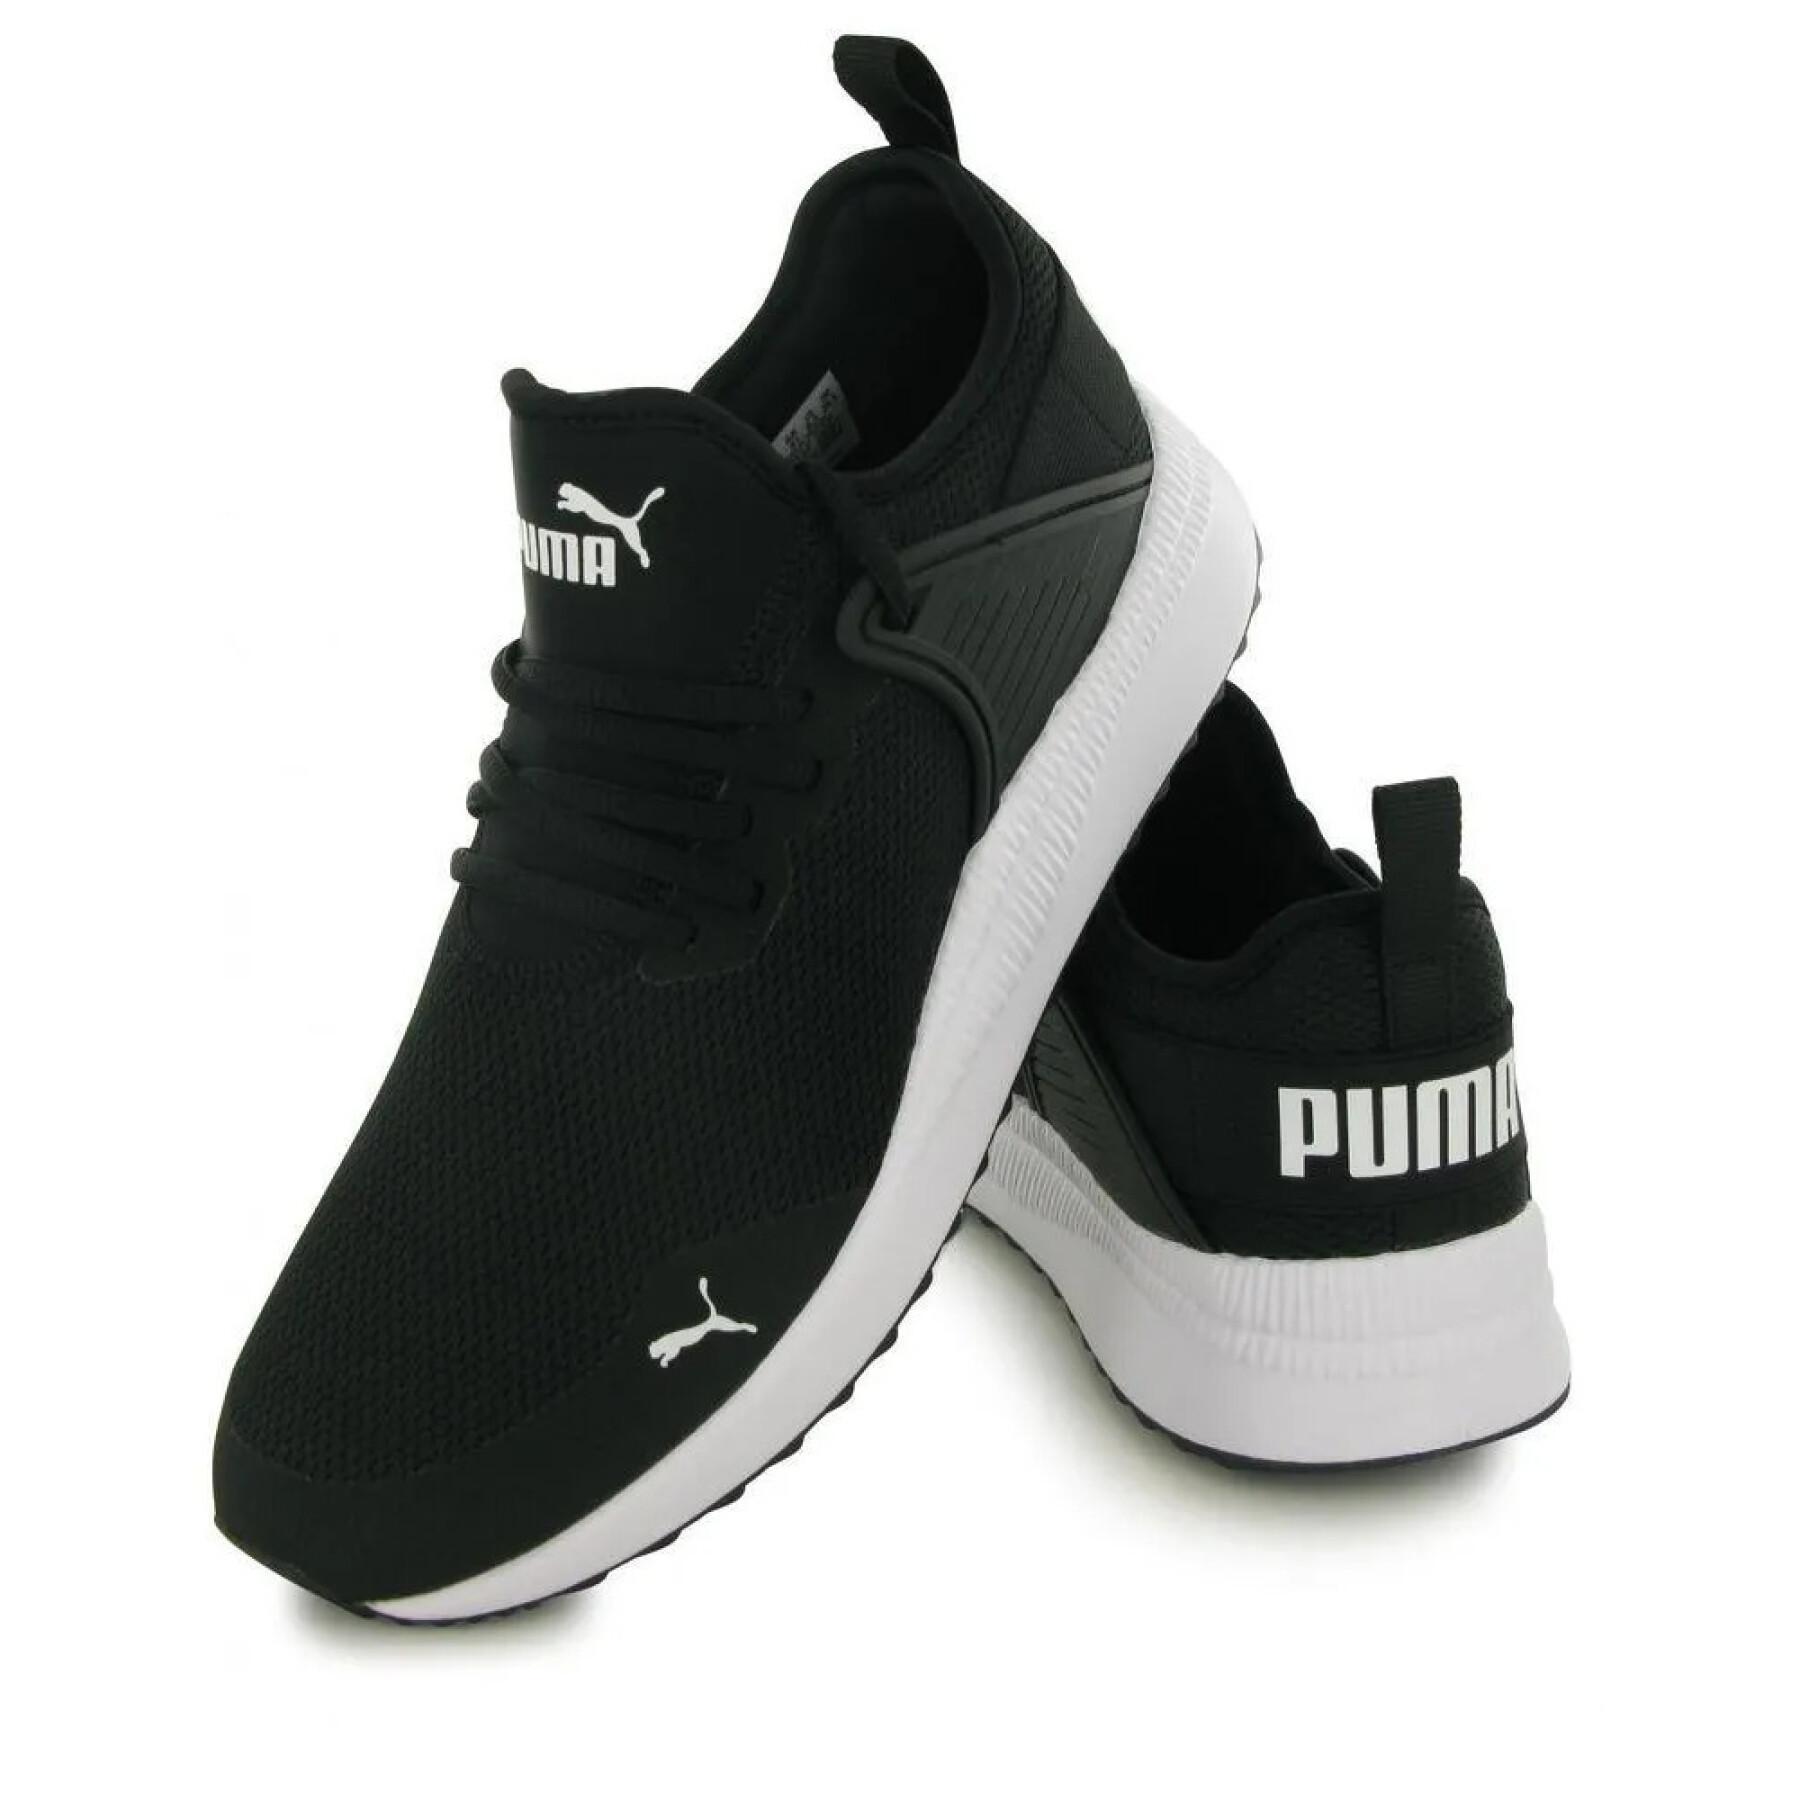 Sapatos Puma Pacer next cage core